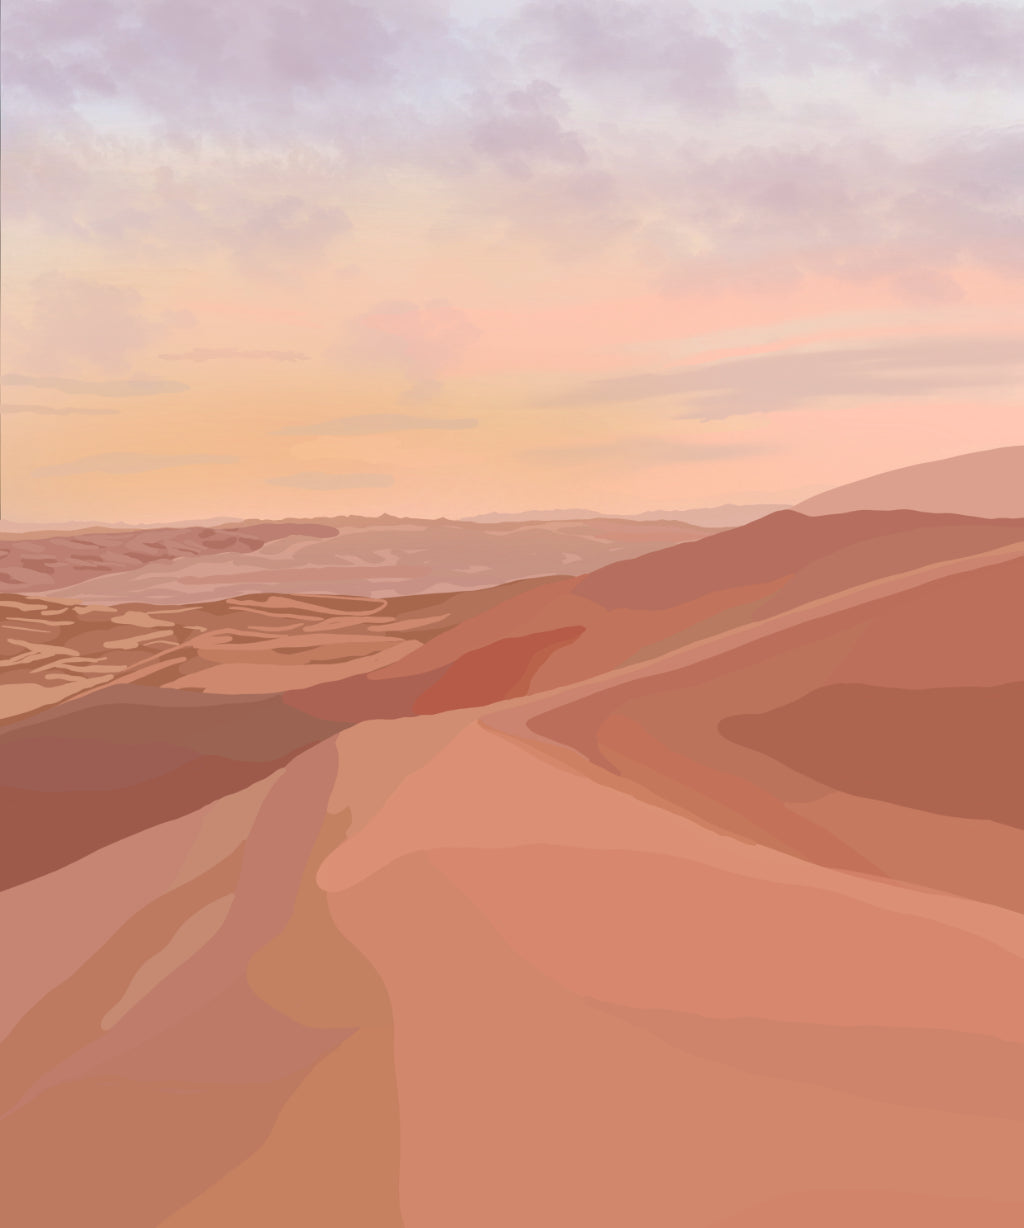 Beige theme desert illustration